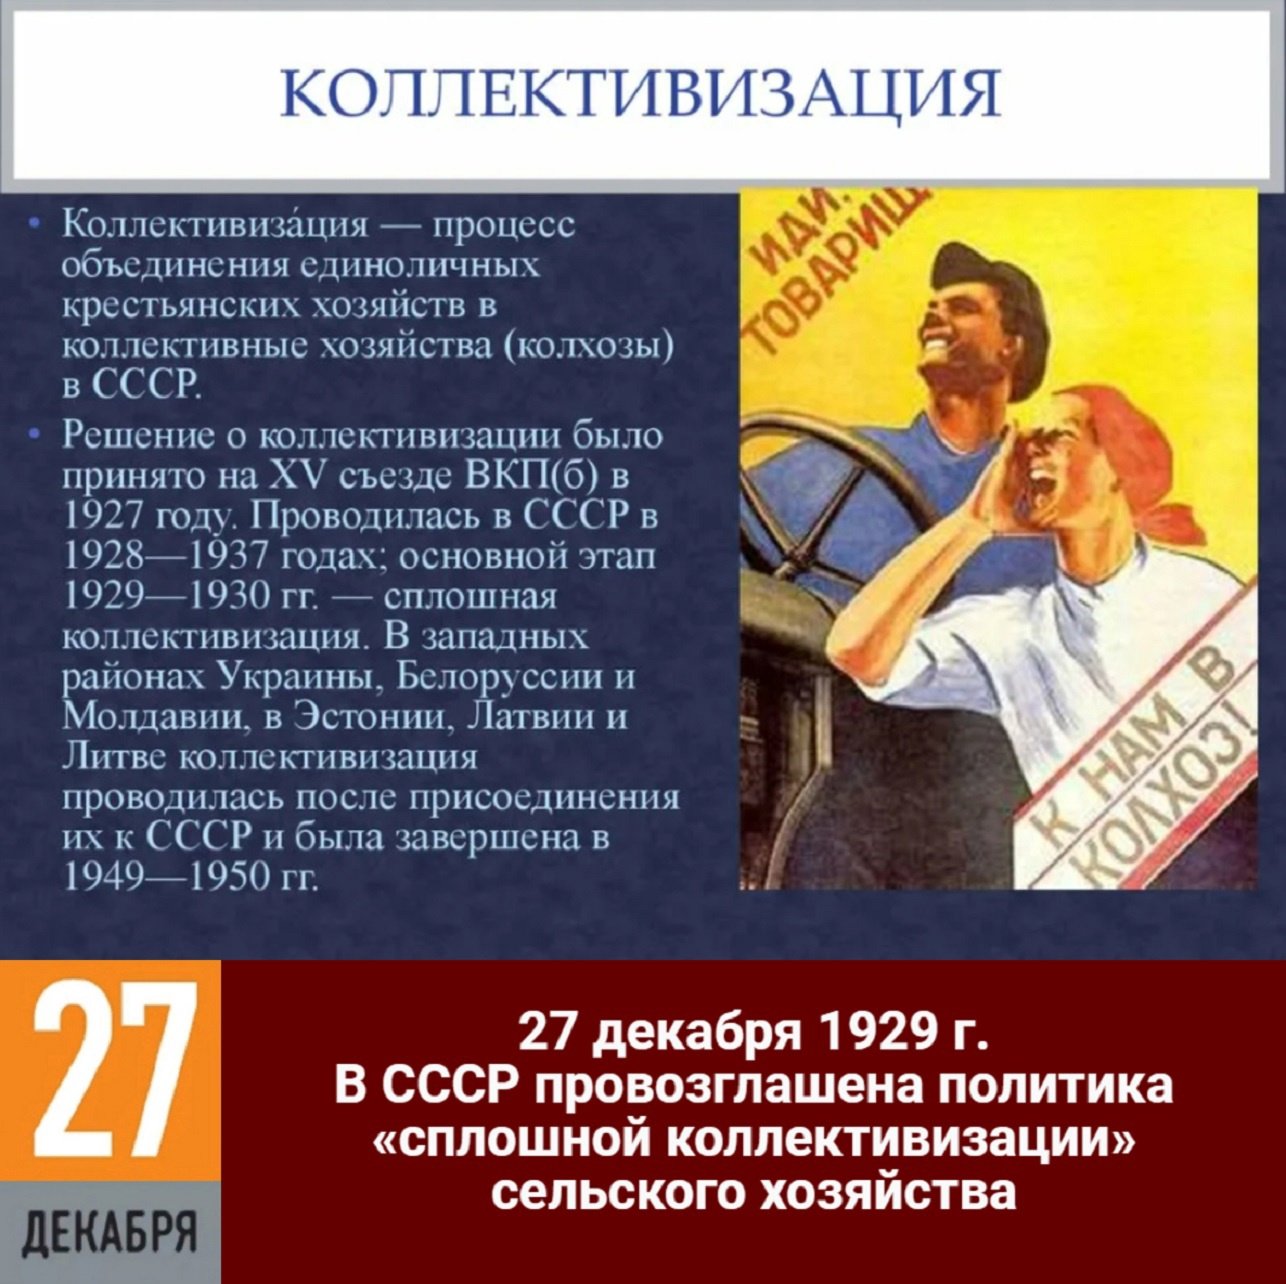 Коллективизация в основном завершилась в году. Коллективизация. Коллективизация в СССР. Коллективизация 1928. Коллективизация 1930.